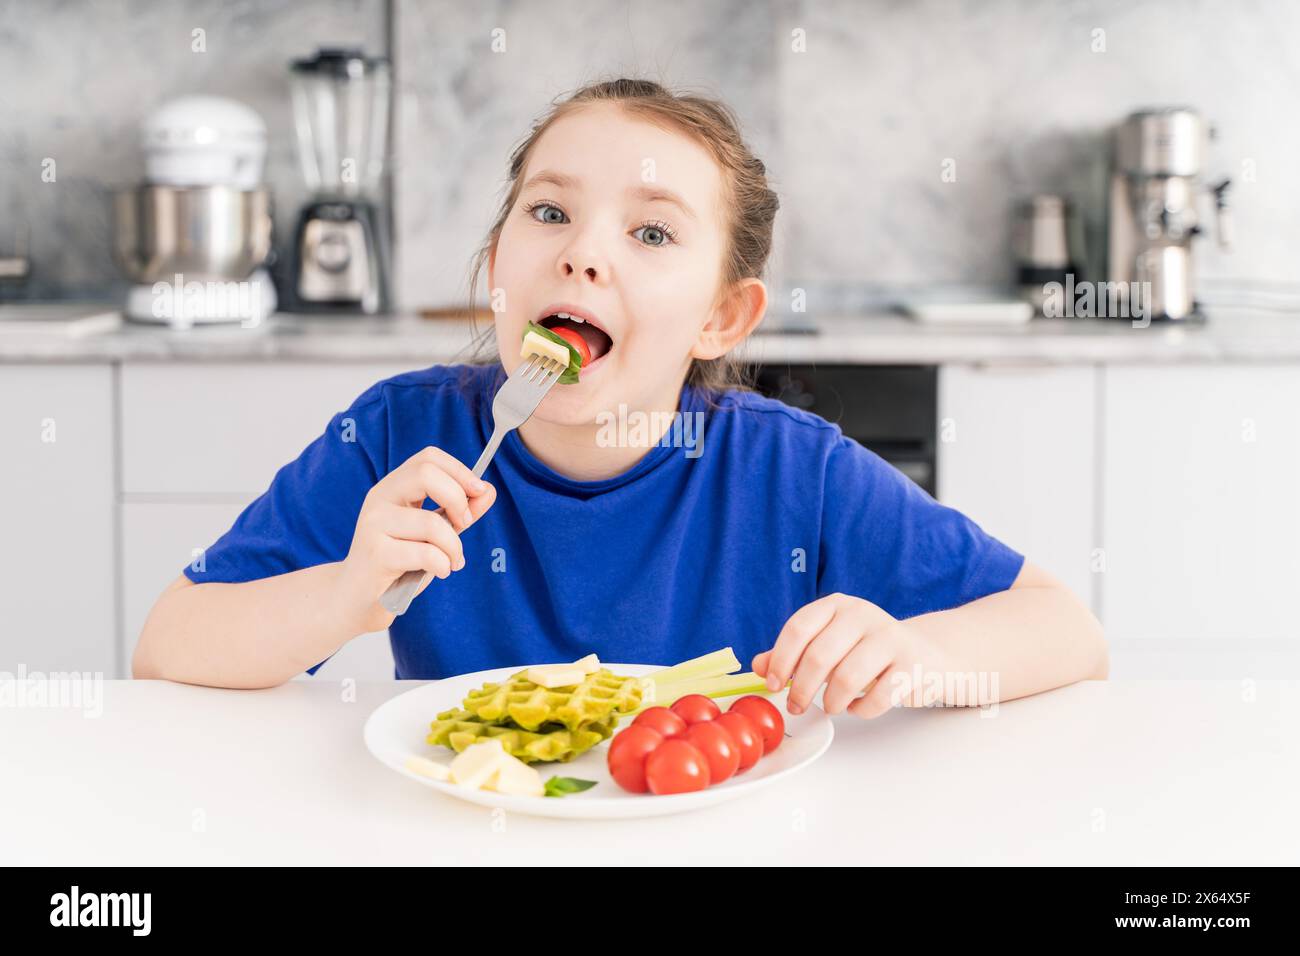 Heureuse petite fille tenant une fourchette dans la bouche. Une jeune fille pré-adolescente prend le petit déjeuner dans la cuisine à la maison avec une assiette de gaufres, légumes et fromage. Banque D'Images